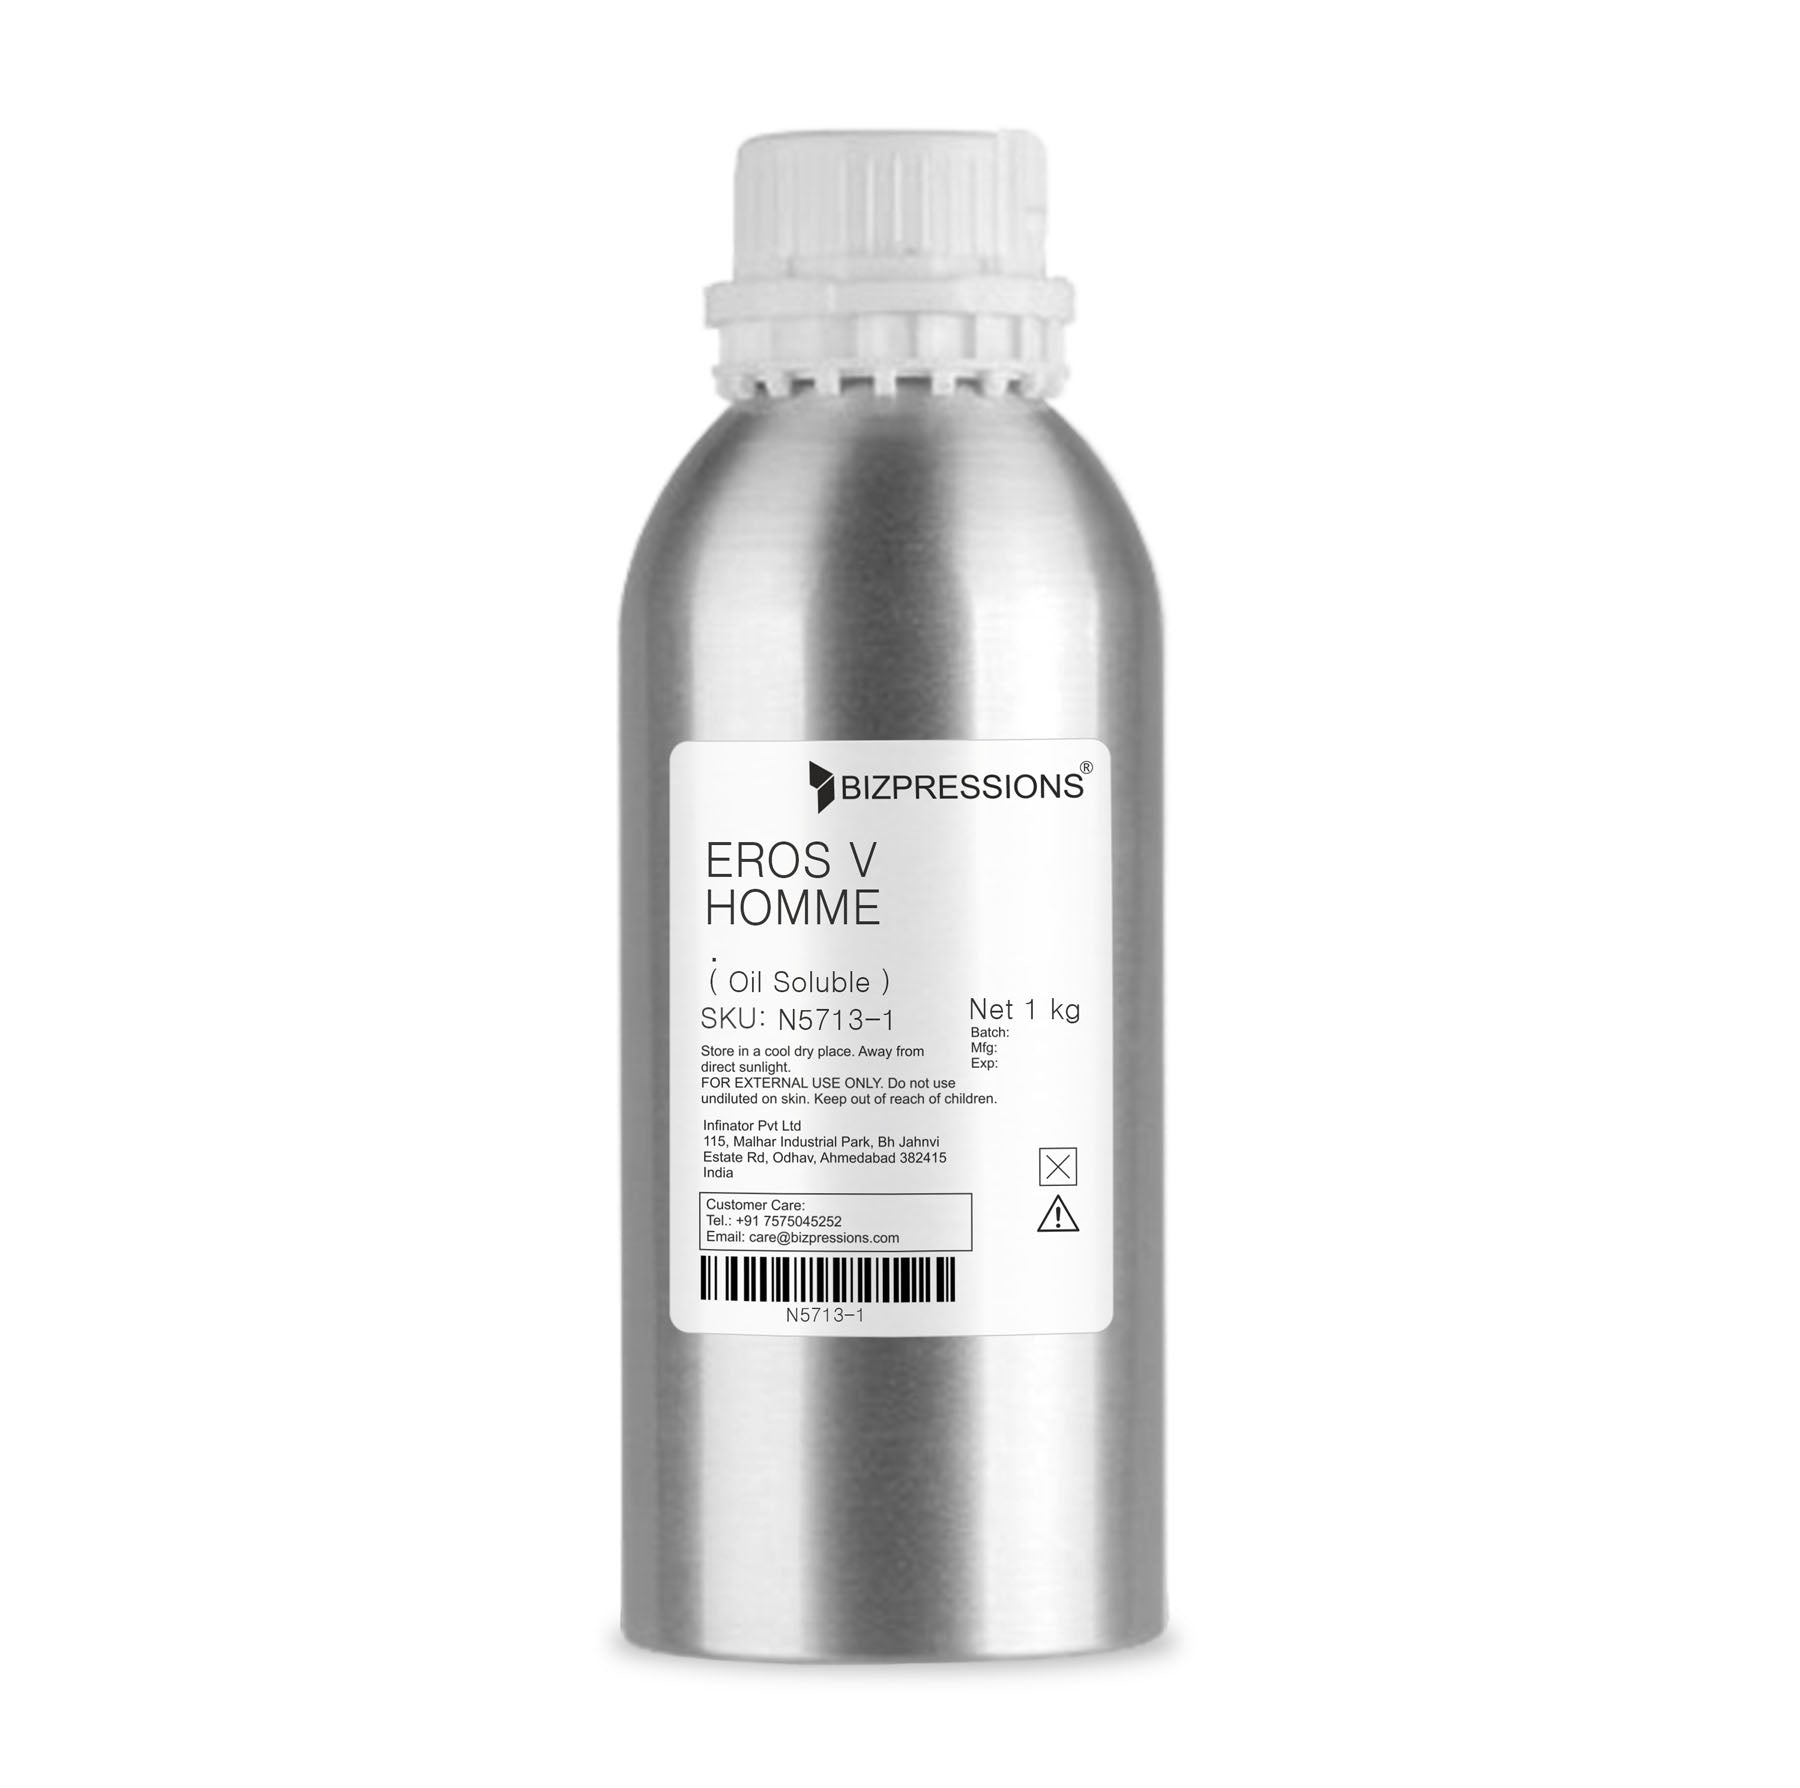 EROS V HOMME - Fragrance ( Oil Soluble ) - 1 kg